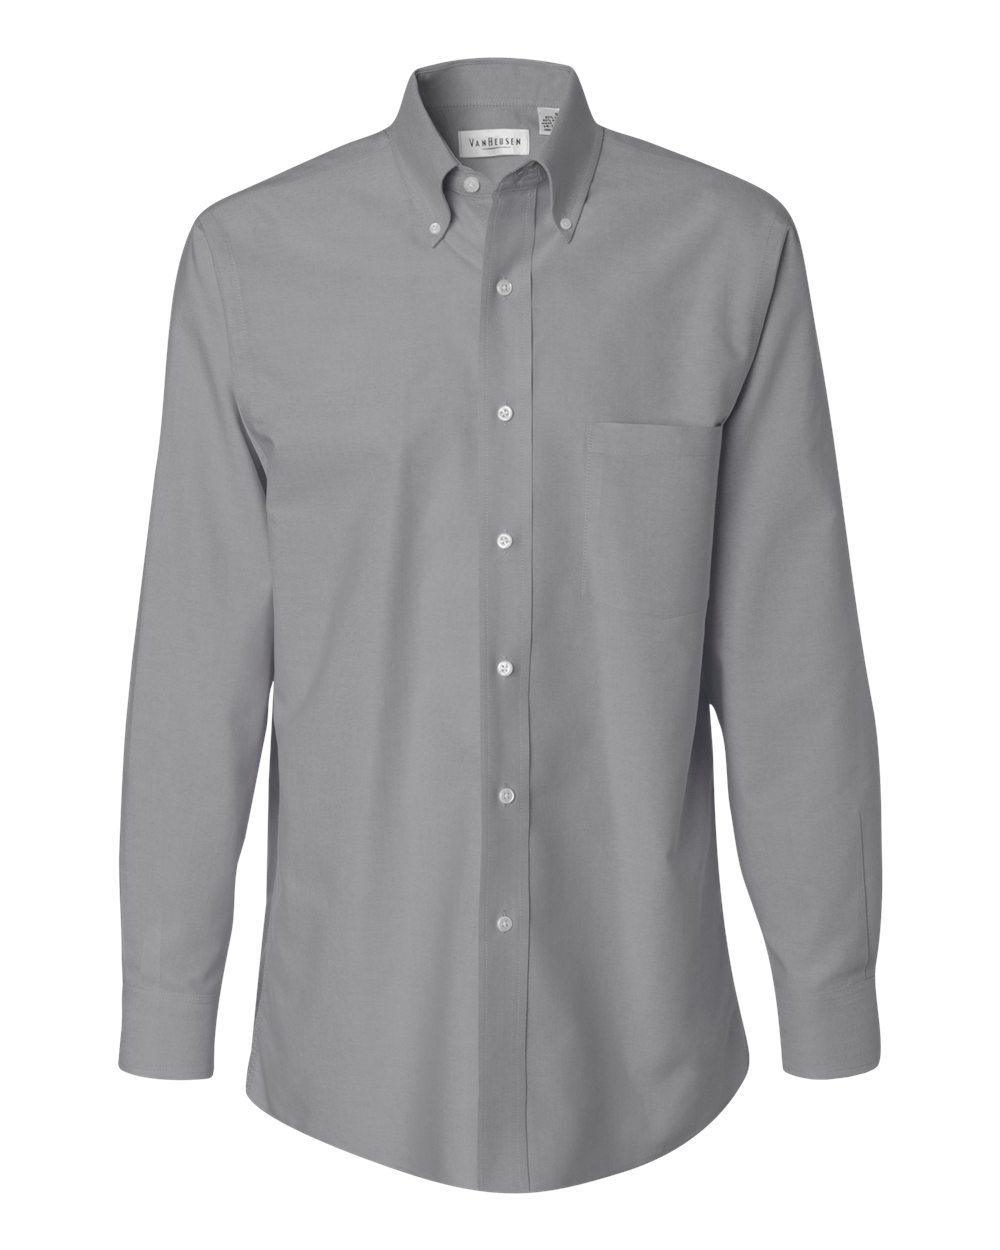 Van Heusen Mens Button Up Long Sleeve Oxford Dress Shirt 13V0040